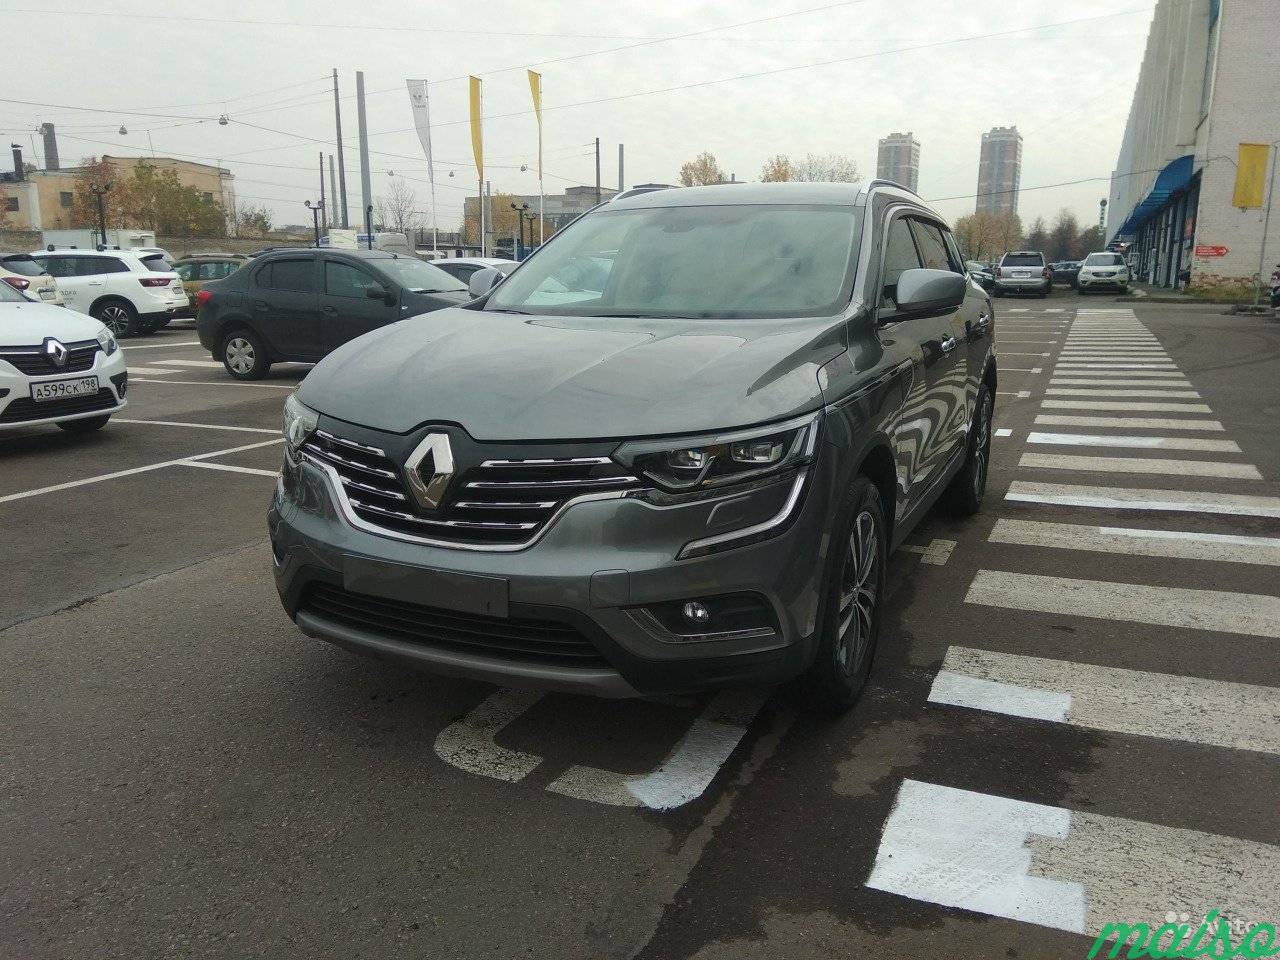 Renault Koleos 2.0 AT, 2018, внедорожник в Санкт-Петербурге. Фото 1